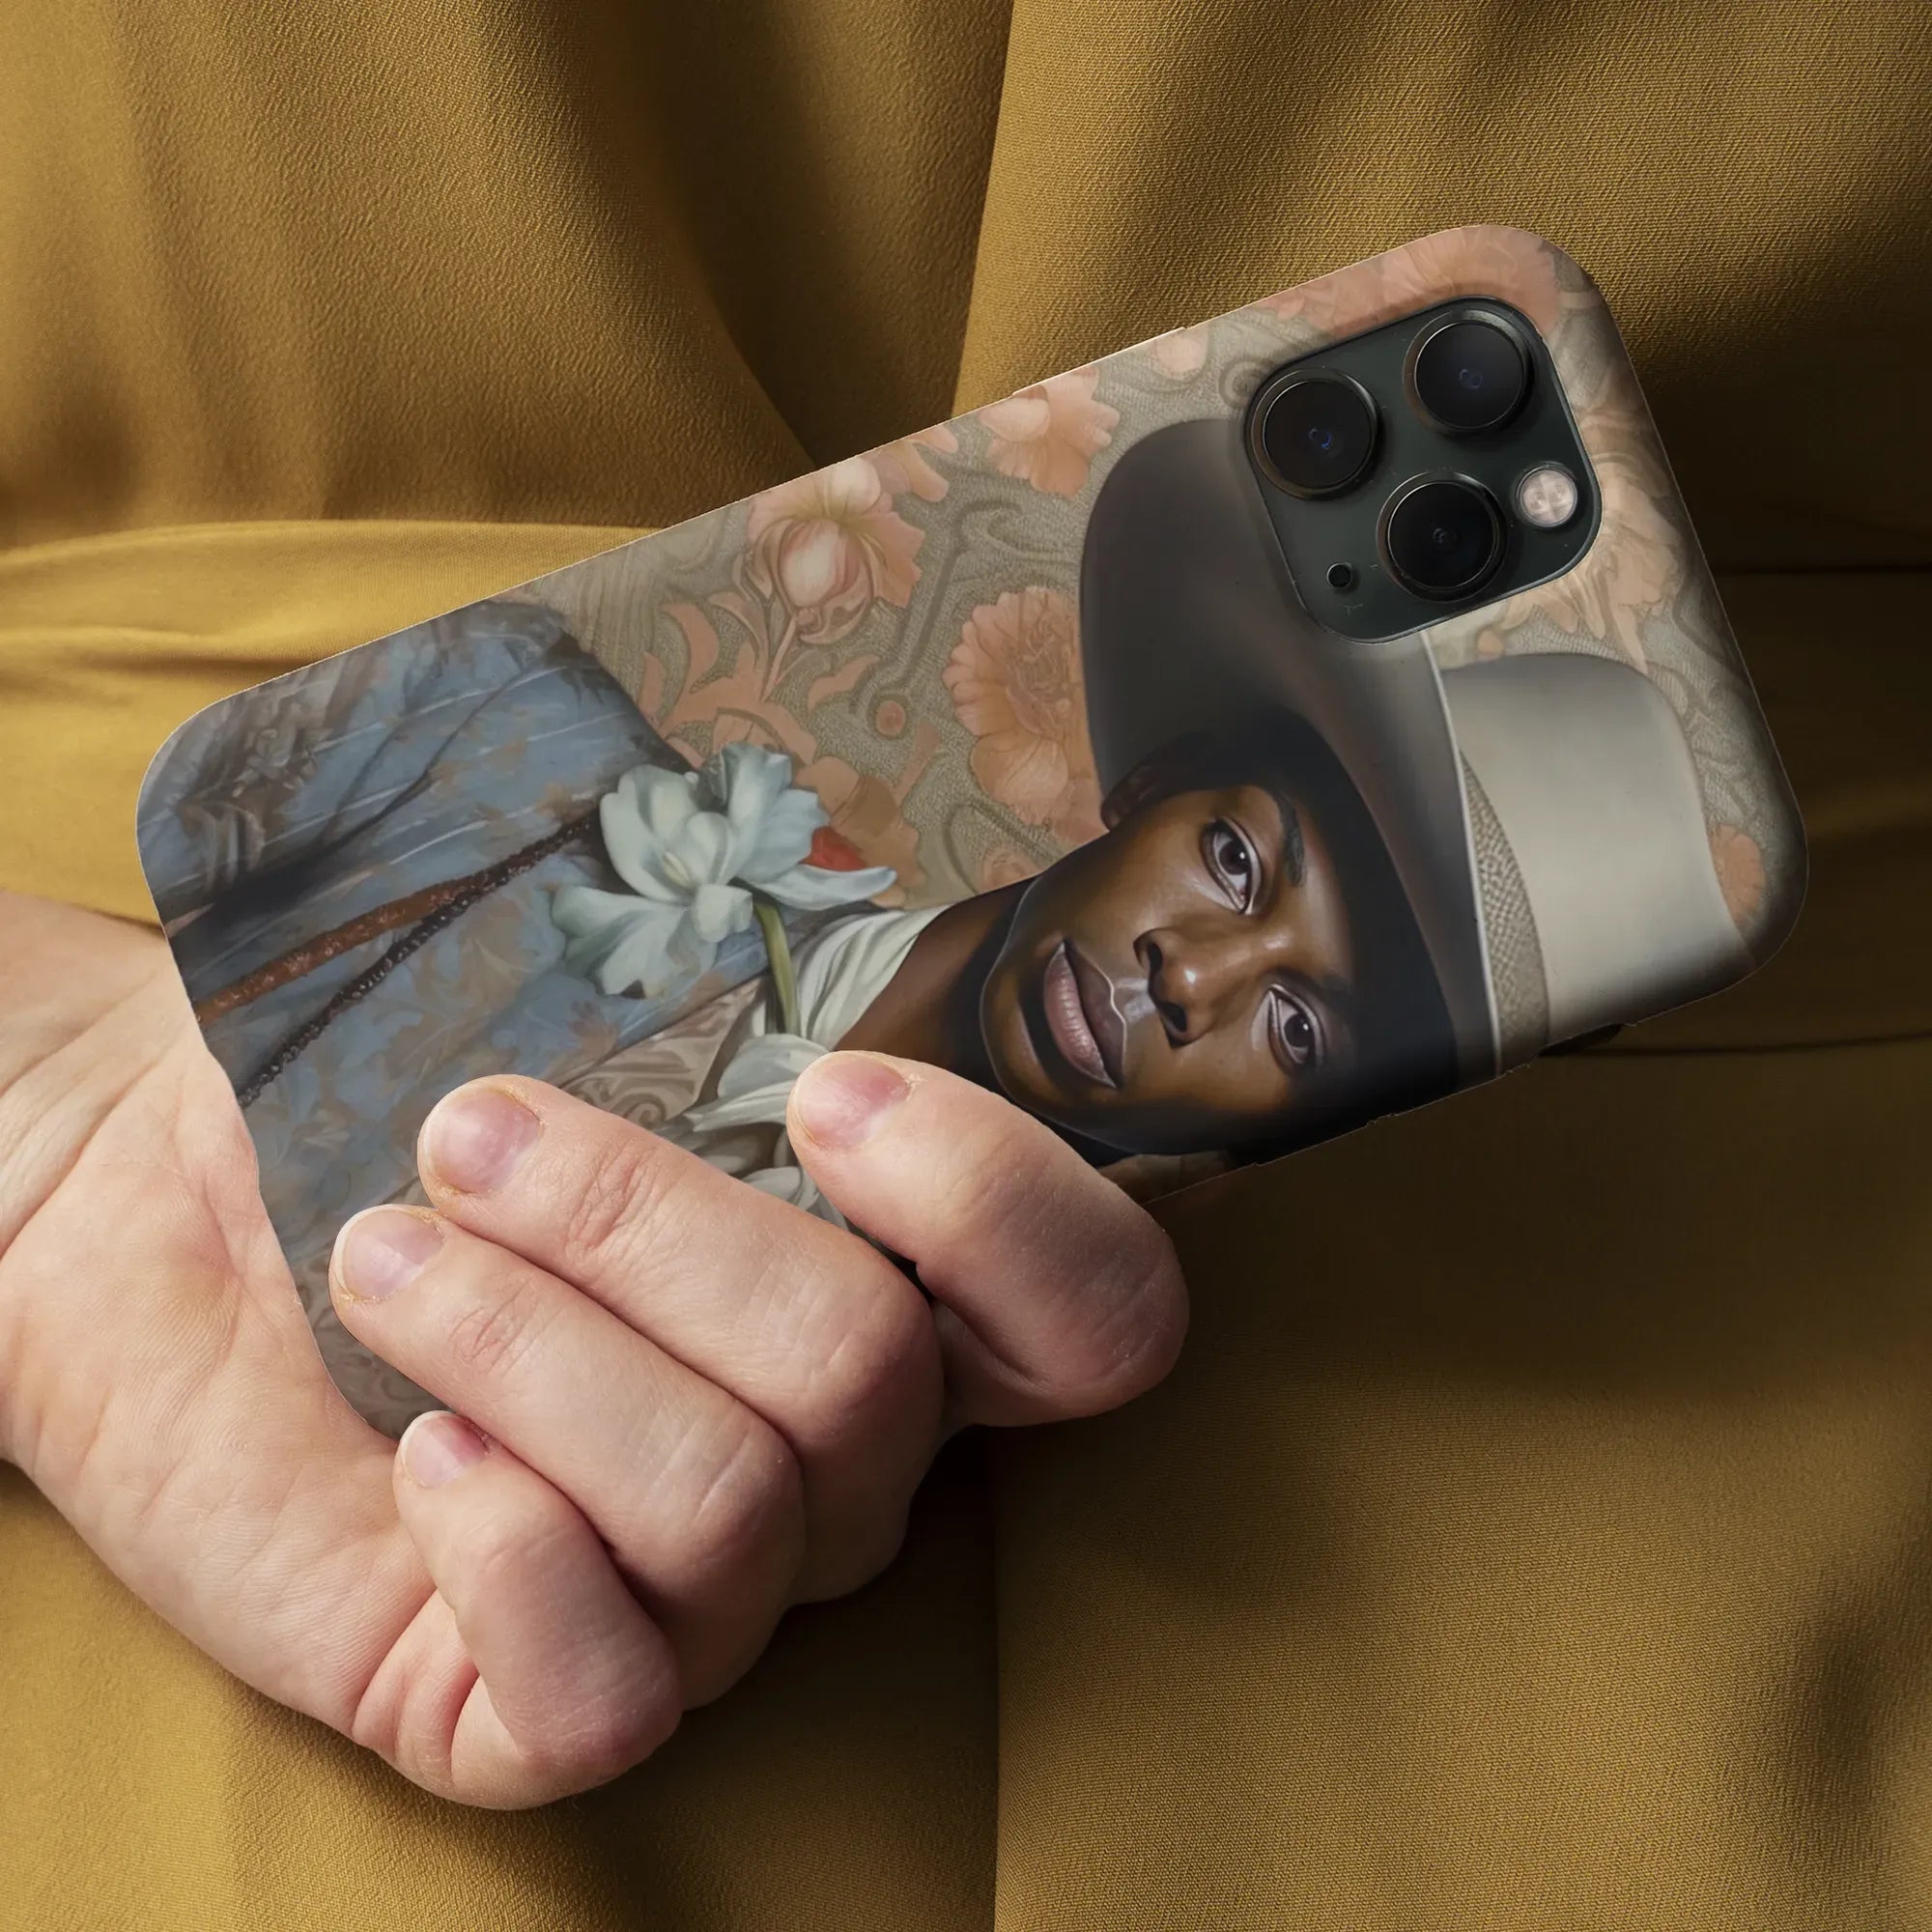 Apollo The Gay Cowboy - Gay Aesthetic Art Phone Case - Mobile Phone Cases - Aesthetic Art